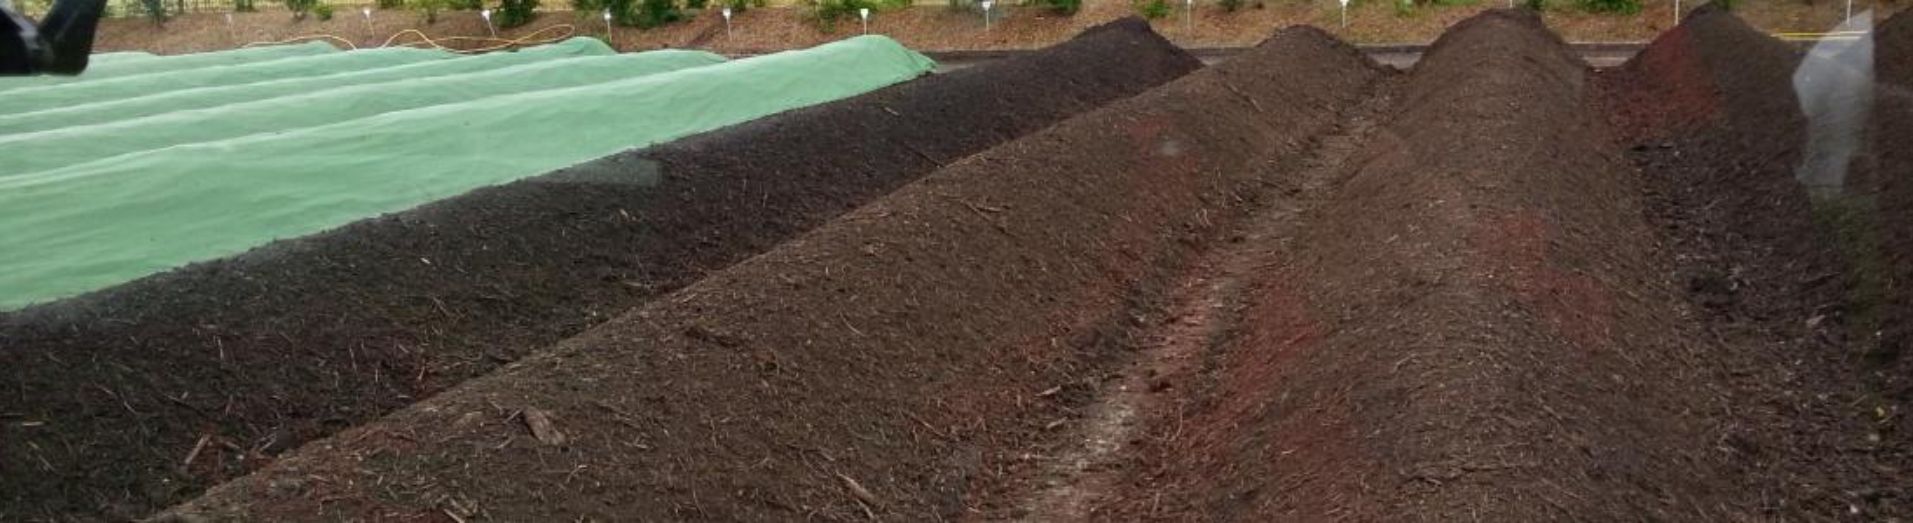 TG 301 retourneur de compost avec irrigation teaser